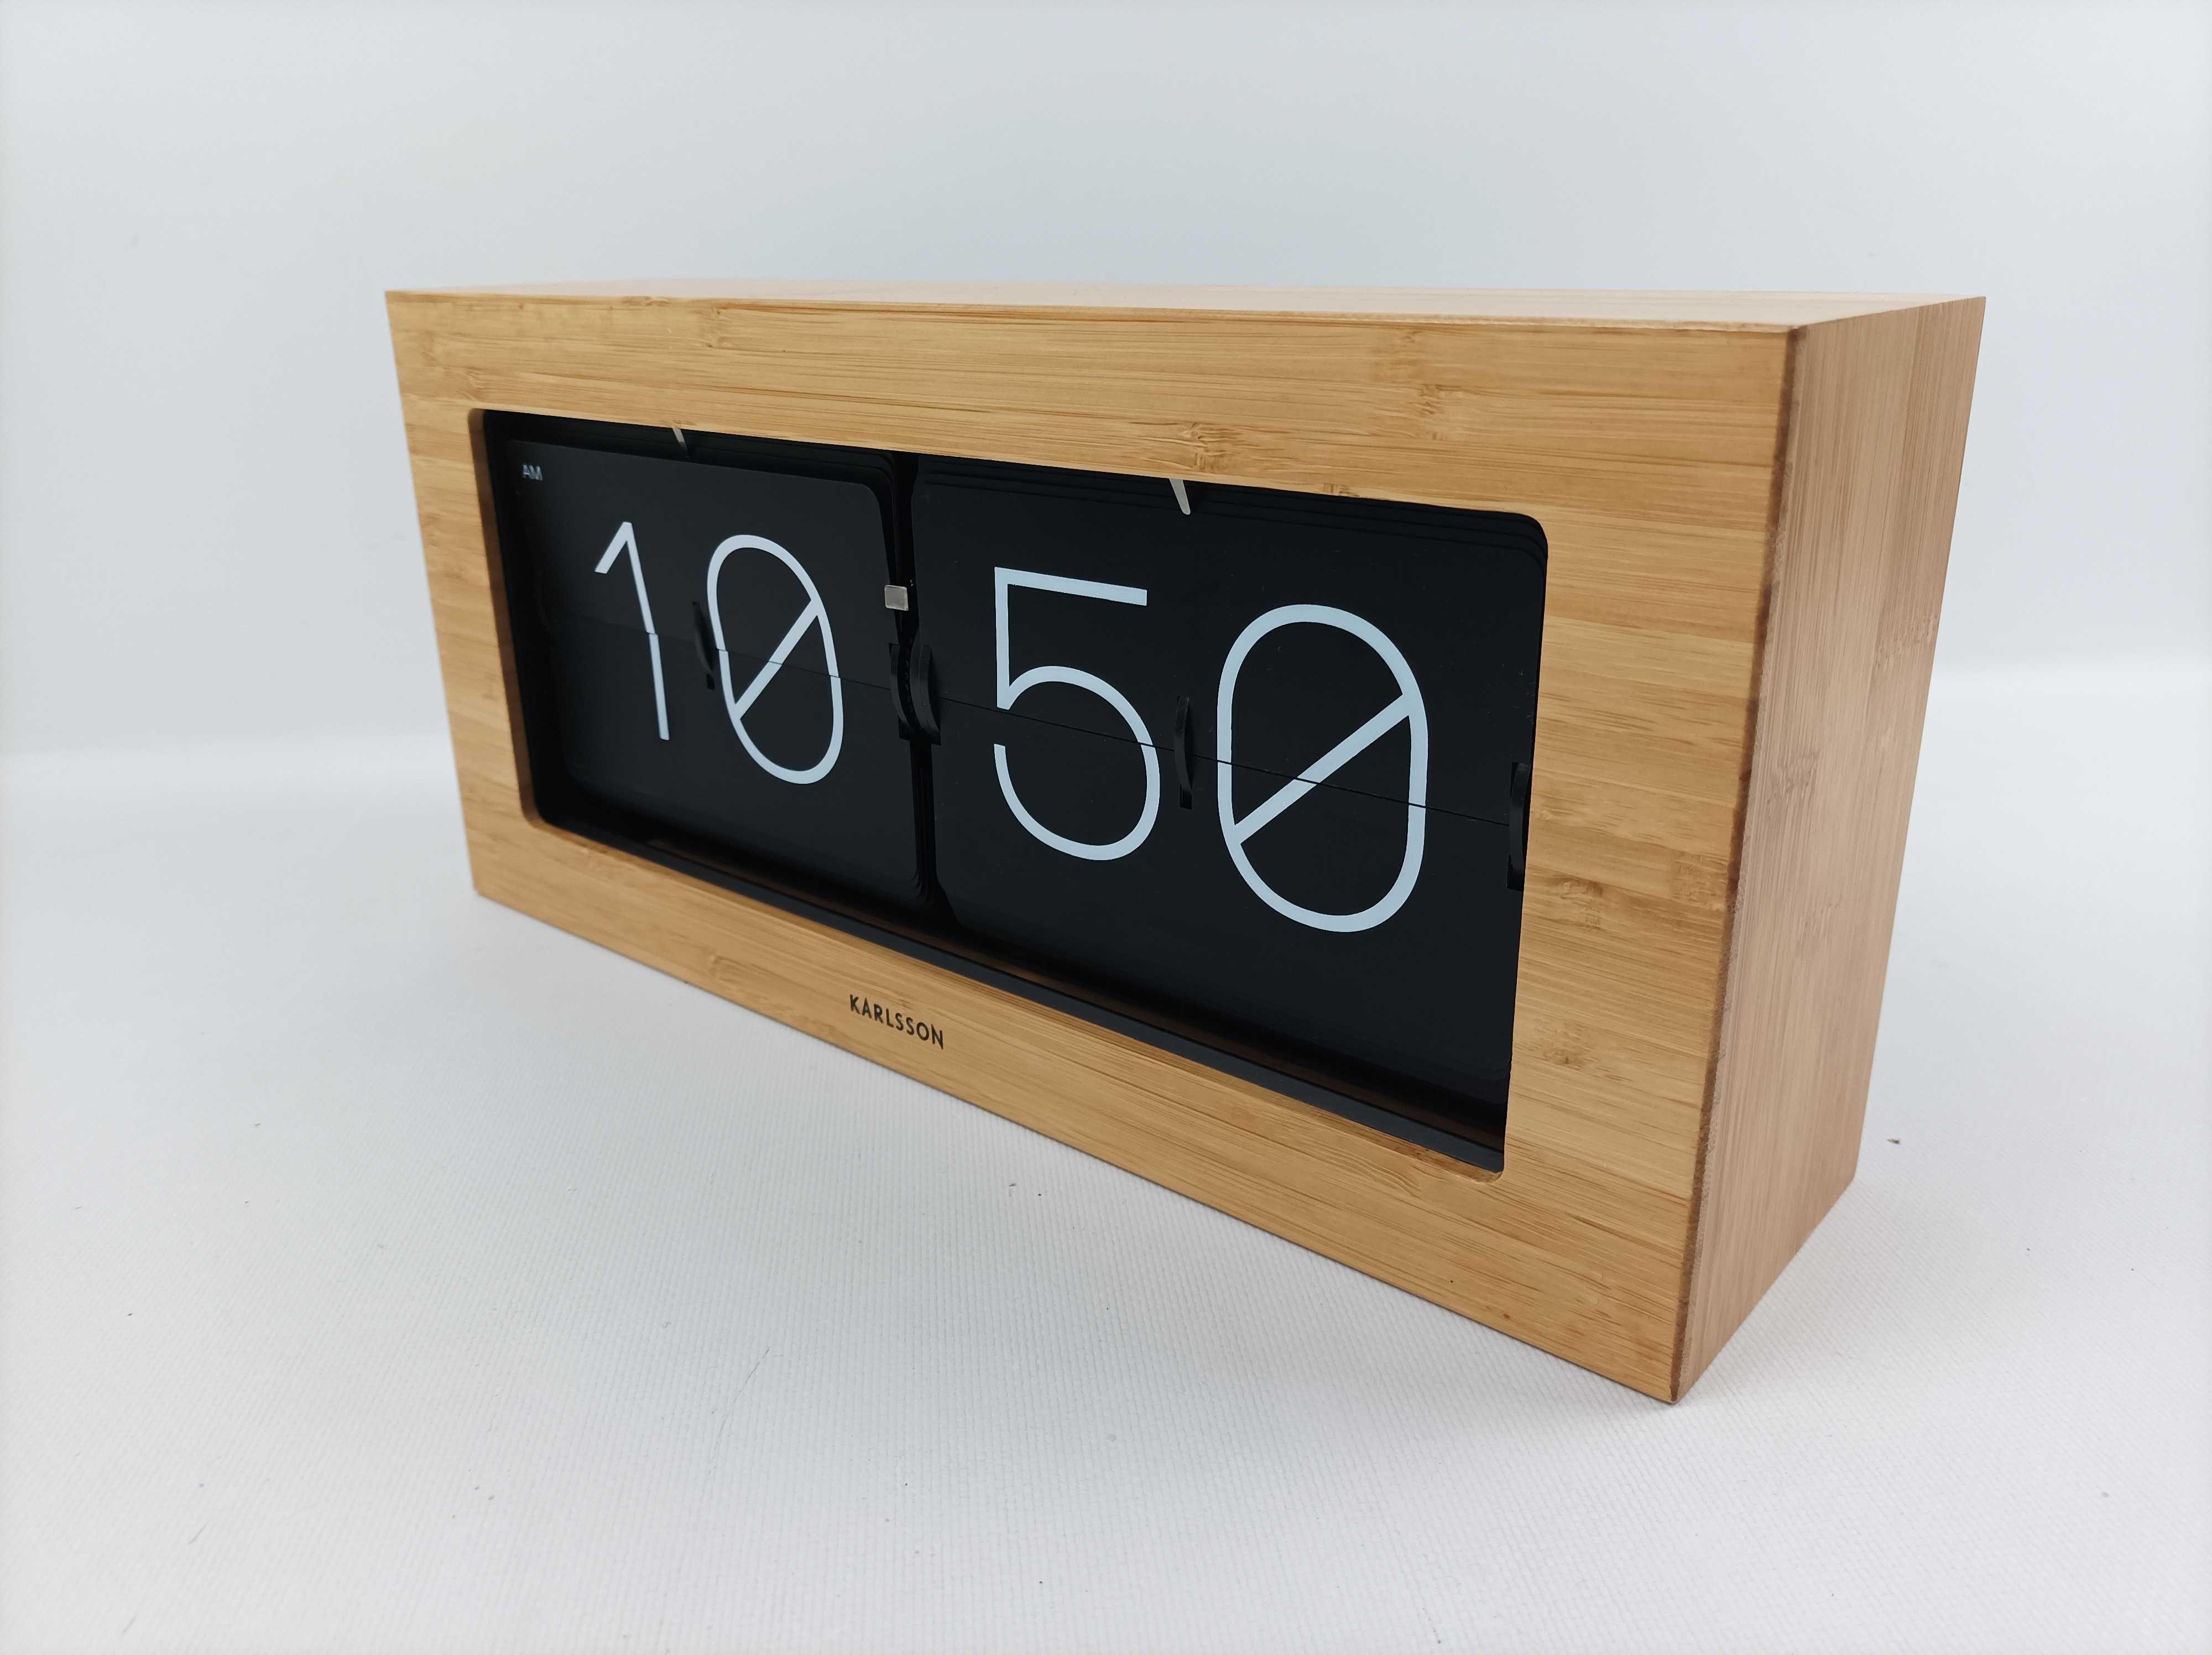 Zegar stołowy ścienny retro Karlsson Flip Clock drewno bambusowe XL